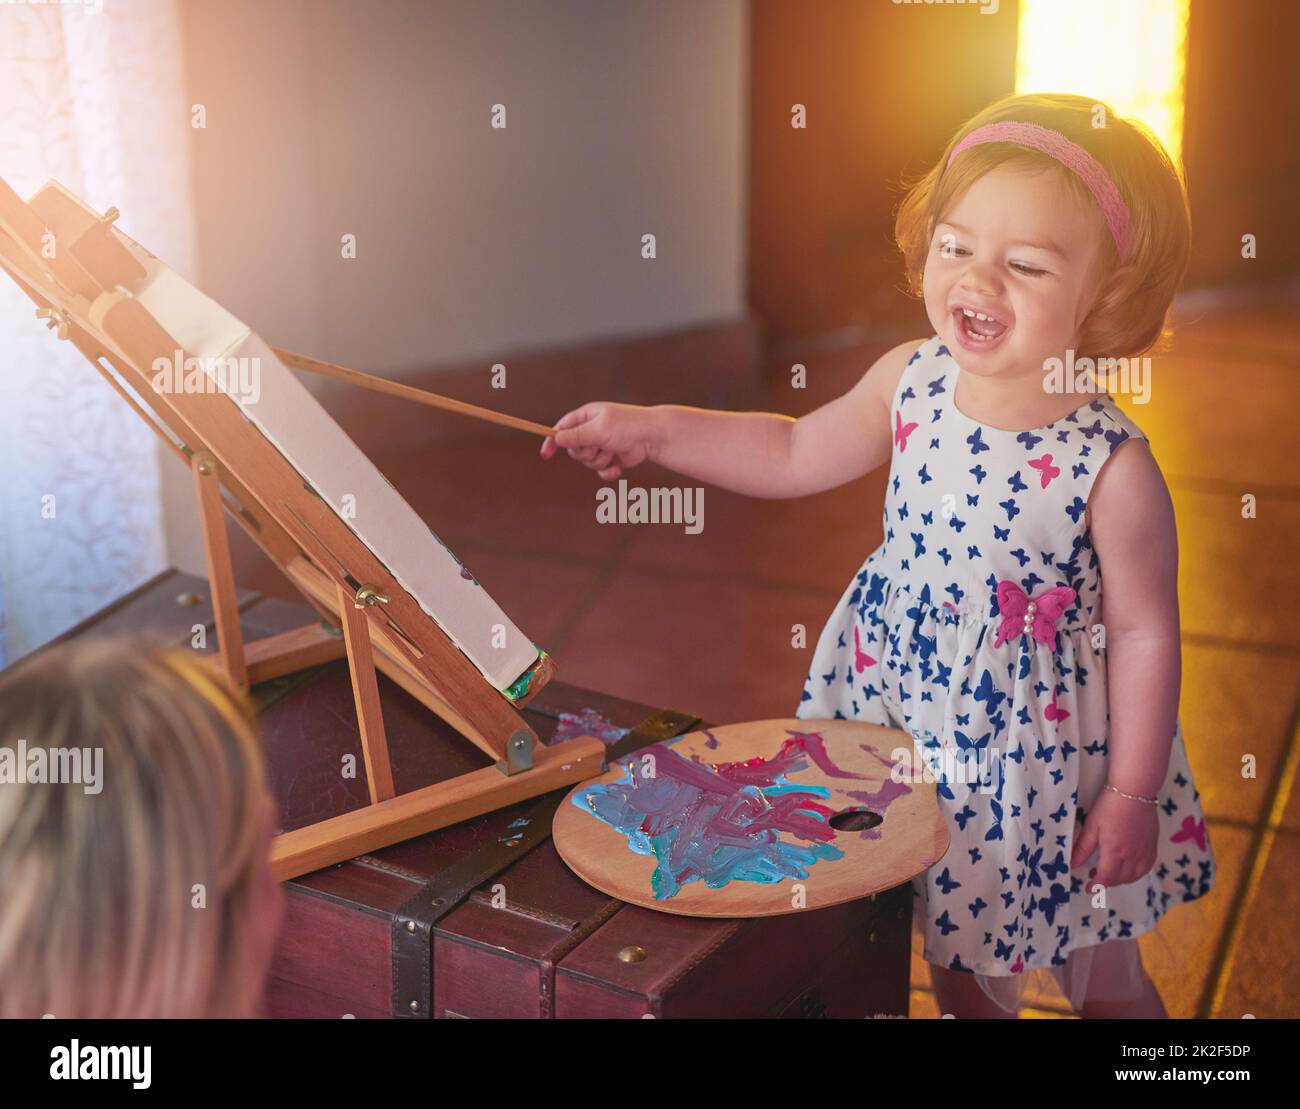 Chef-d'œuvre en cours. Photo d'une adorable petite fille peignant une photo tandis que sa mère regarde à la maison. Banque D'Images